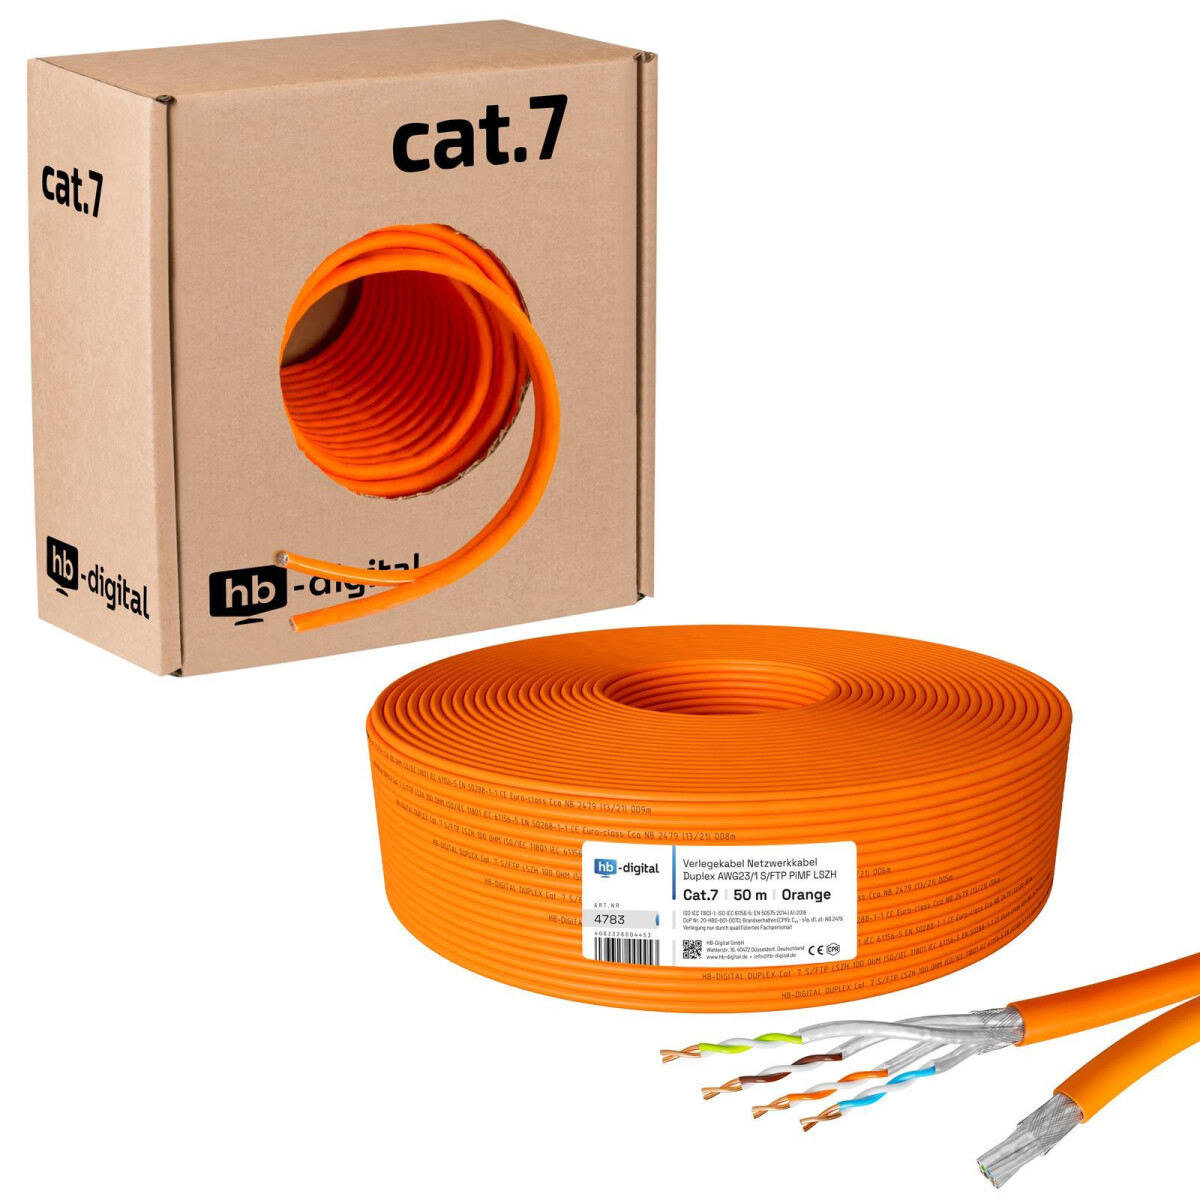 Cat7 Verlegekabel duplex 50 m Netzwerkkabel cat 7 Twin Kabel Netzwerk Kupfer 50m 